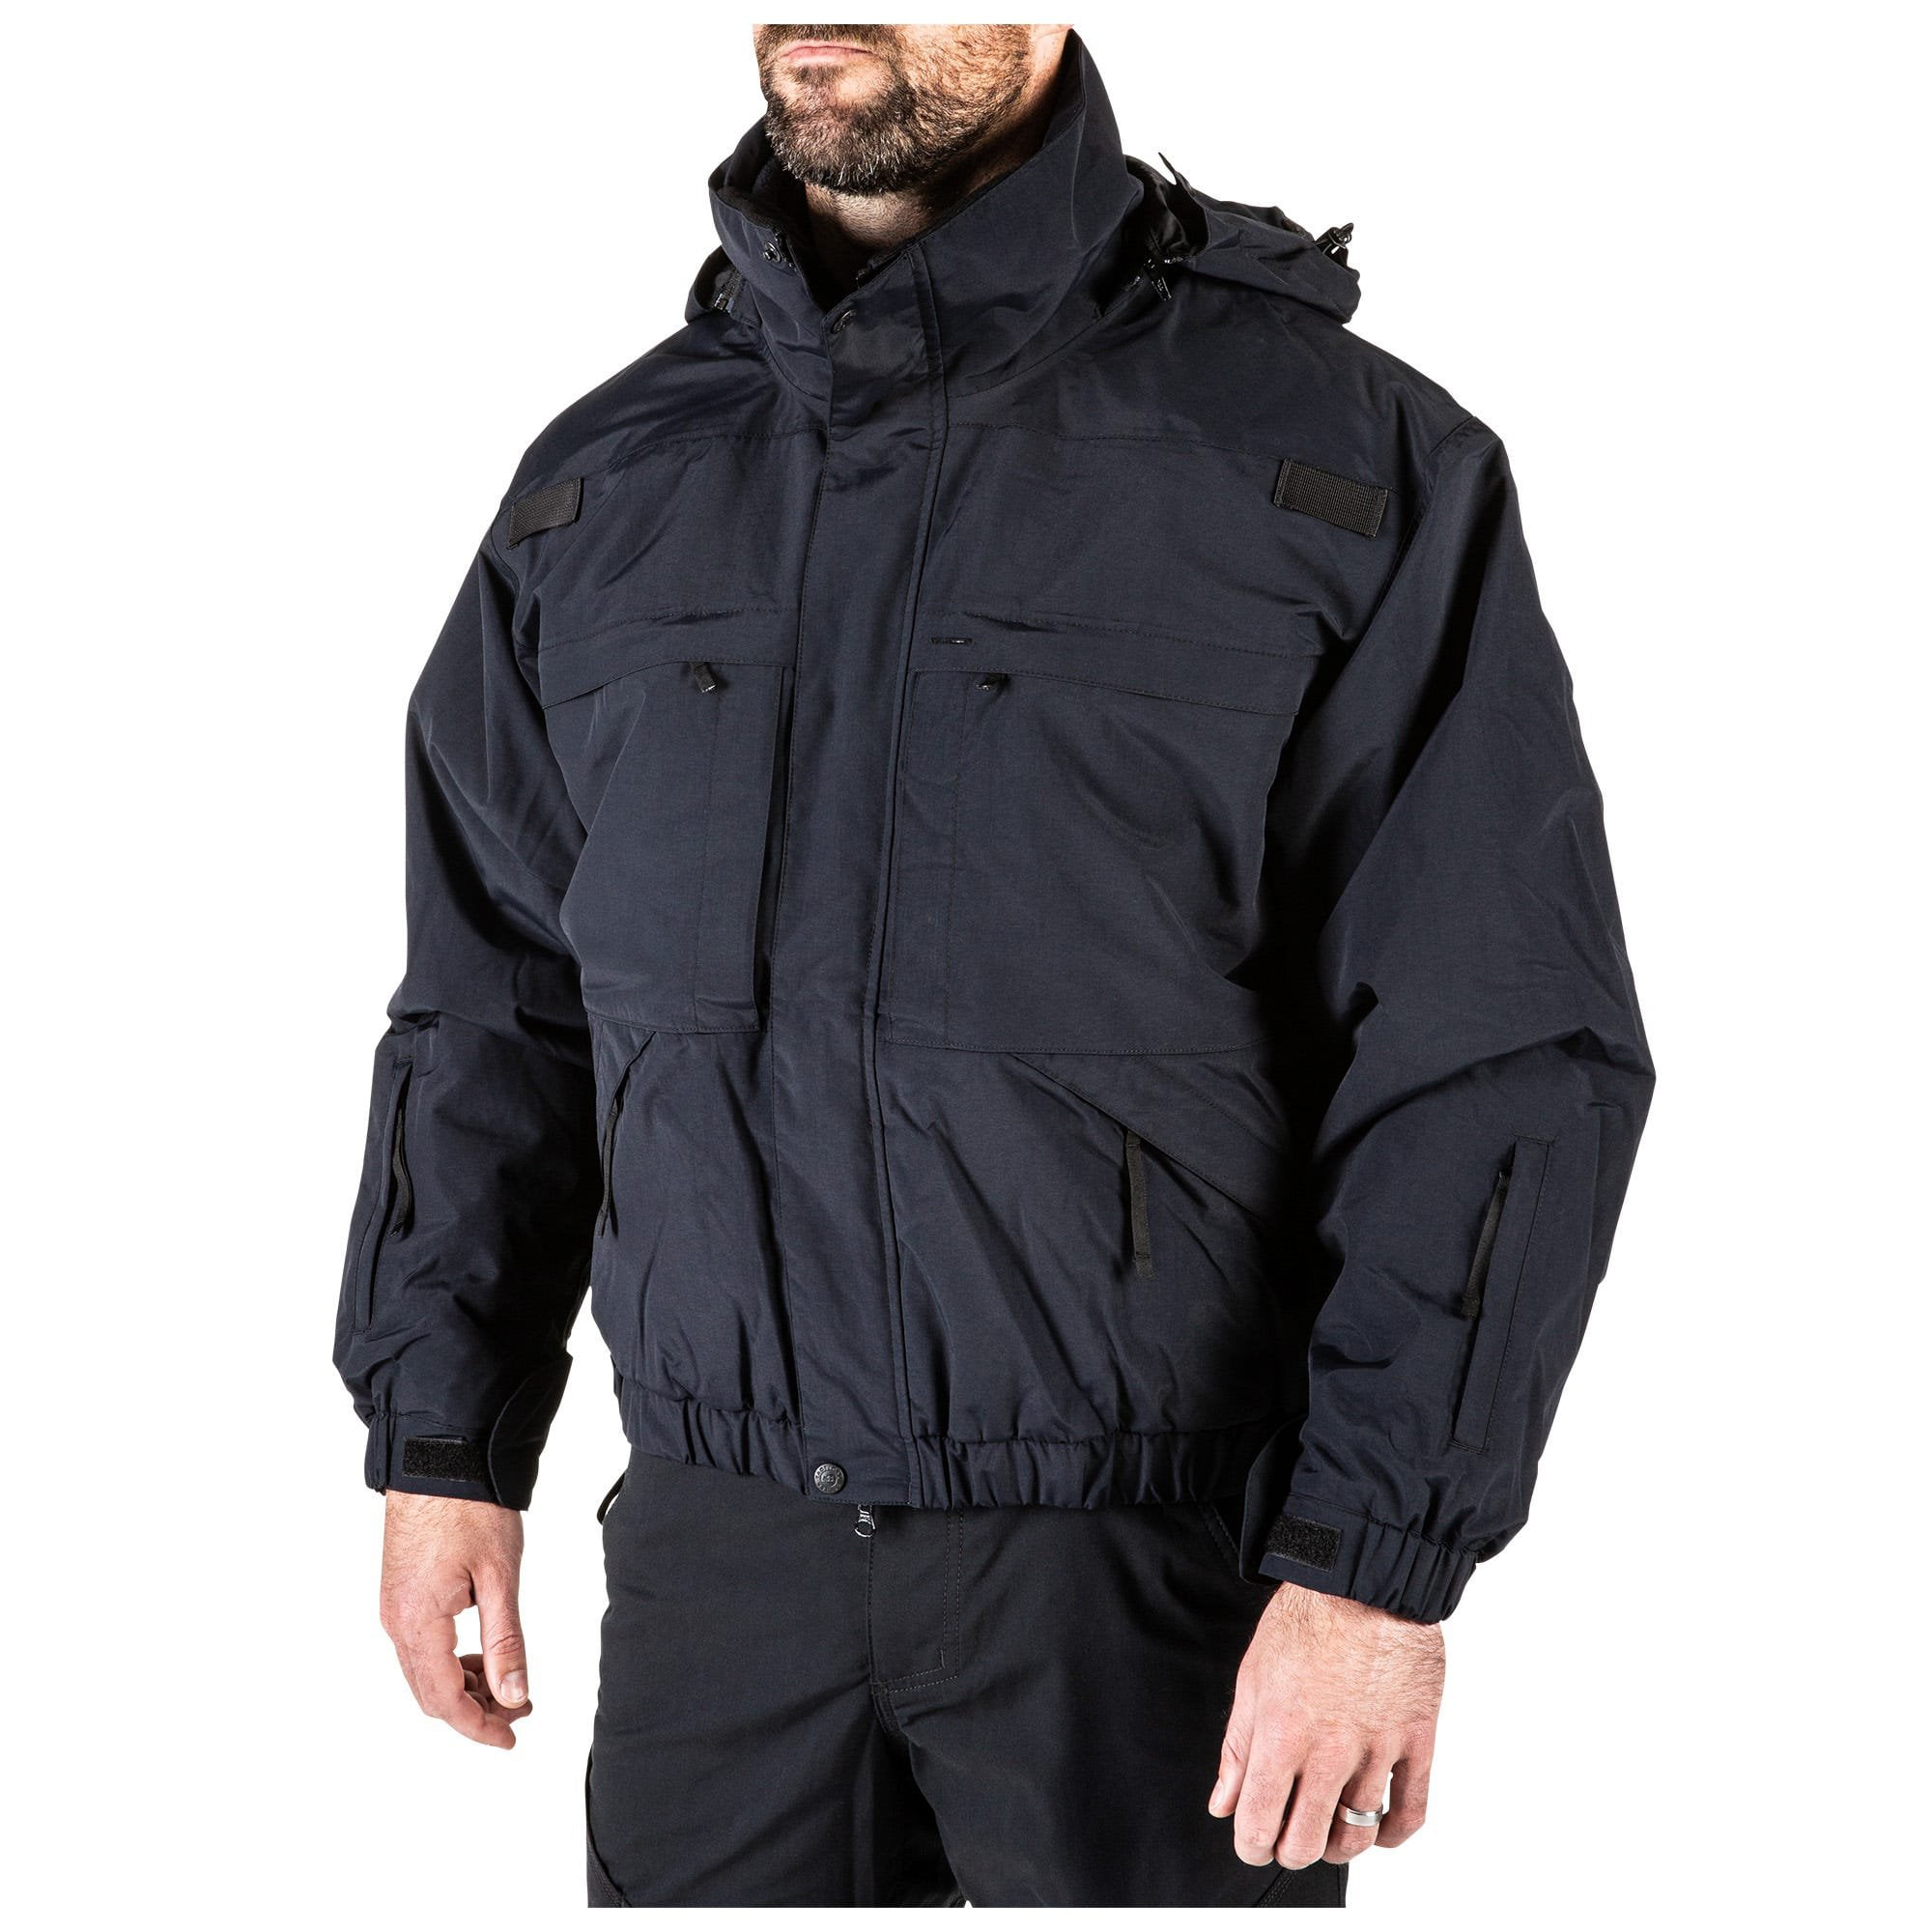 5.11 Tactical Men's 5-in-1 Jacket, Removable Fleece Inner Liner, Zip-Off Sleeves, Dark Navy, L